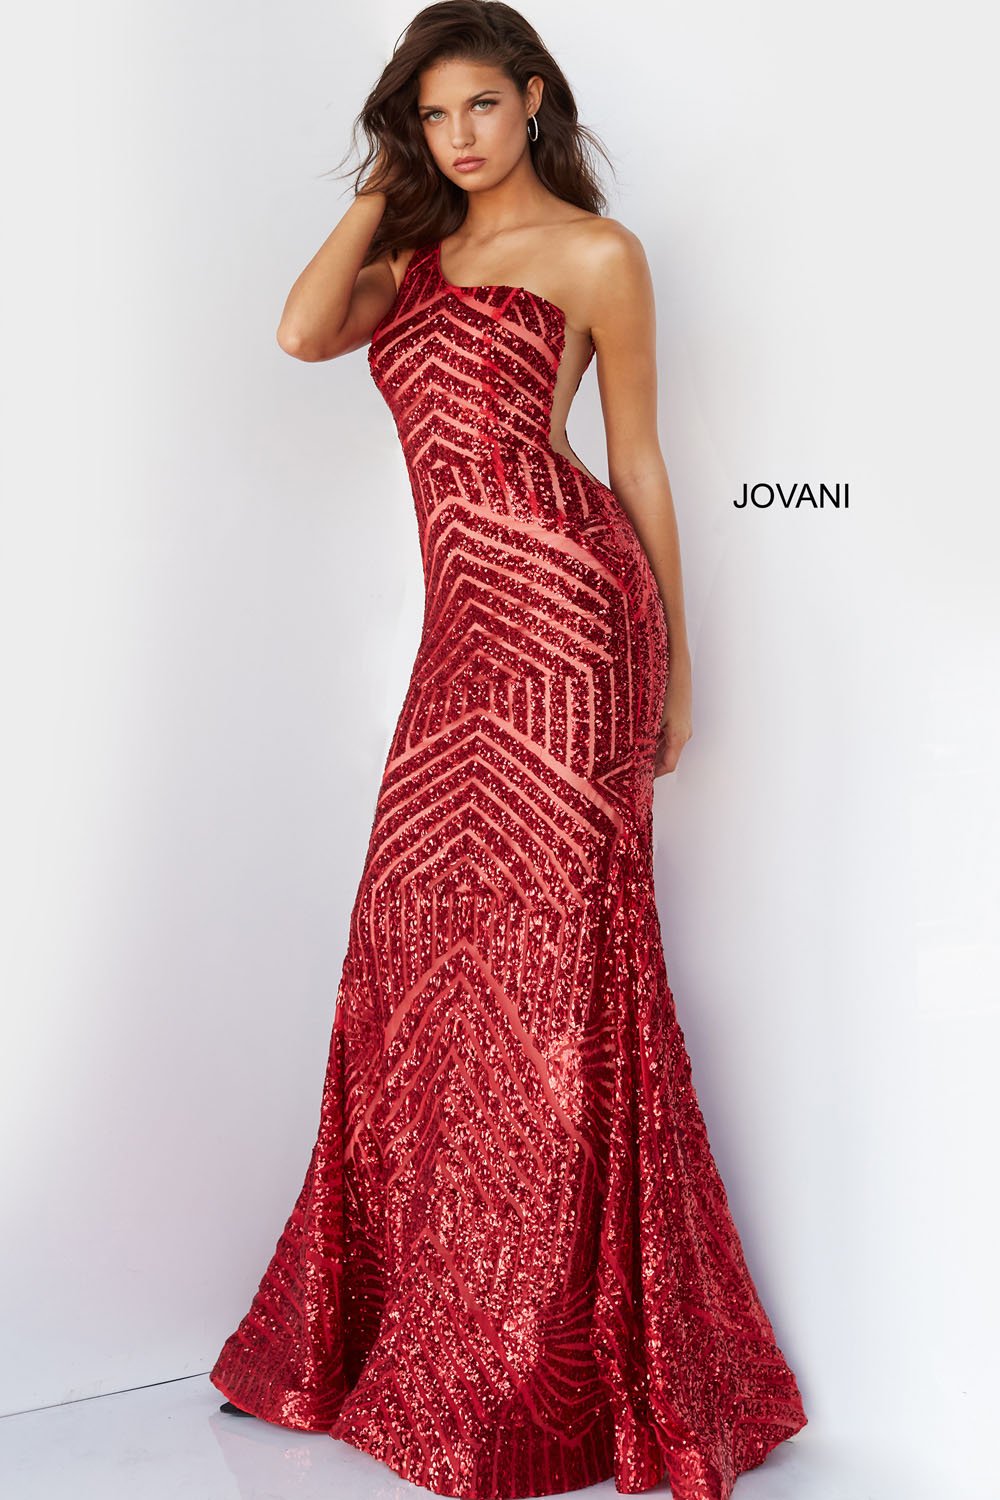 Jovani Dresses – InternationalProm.com